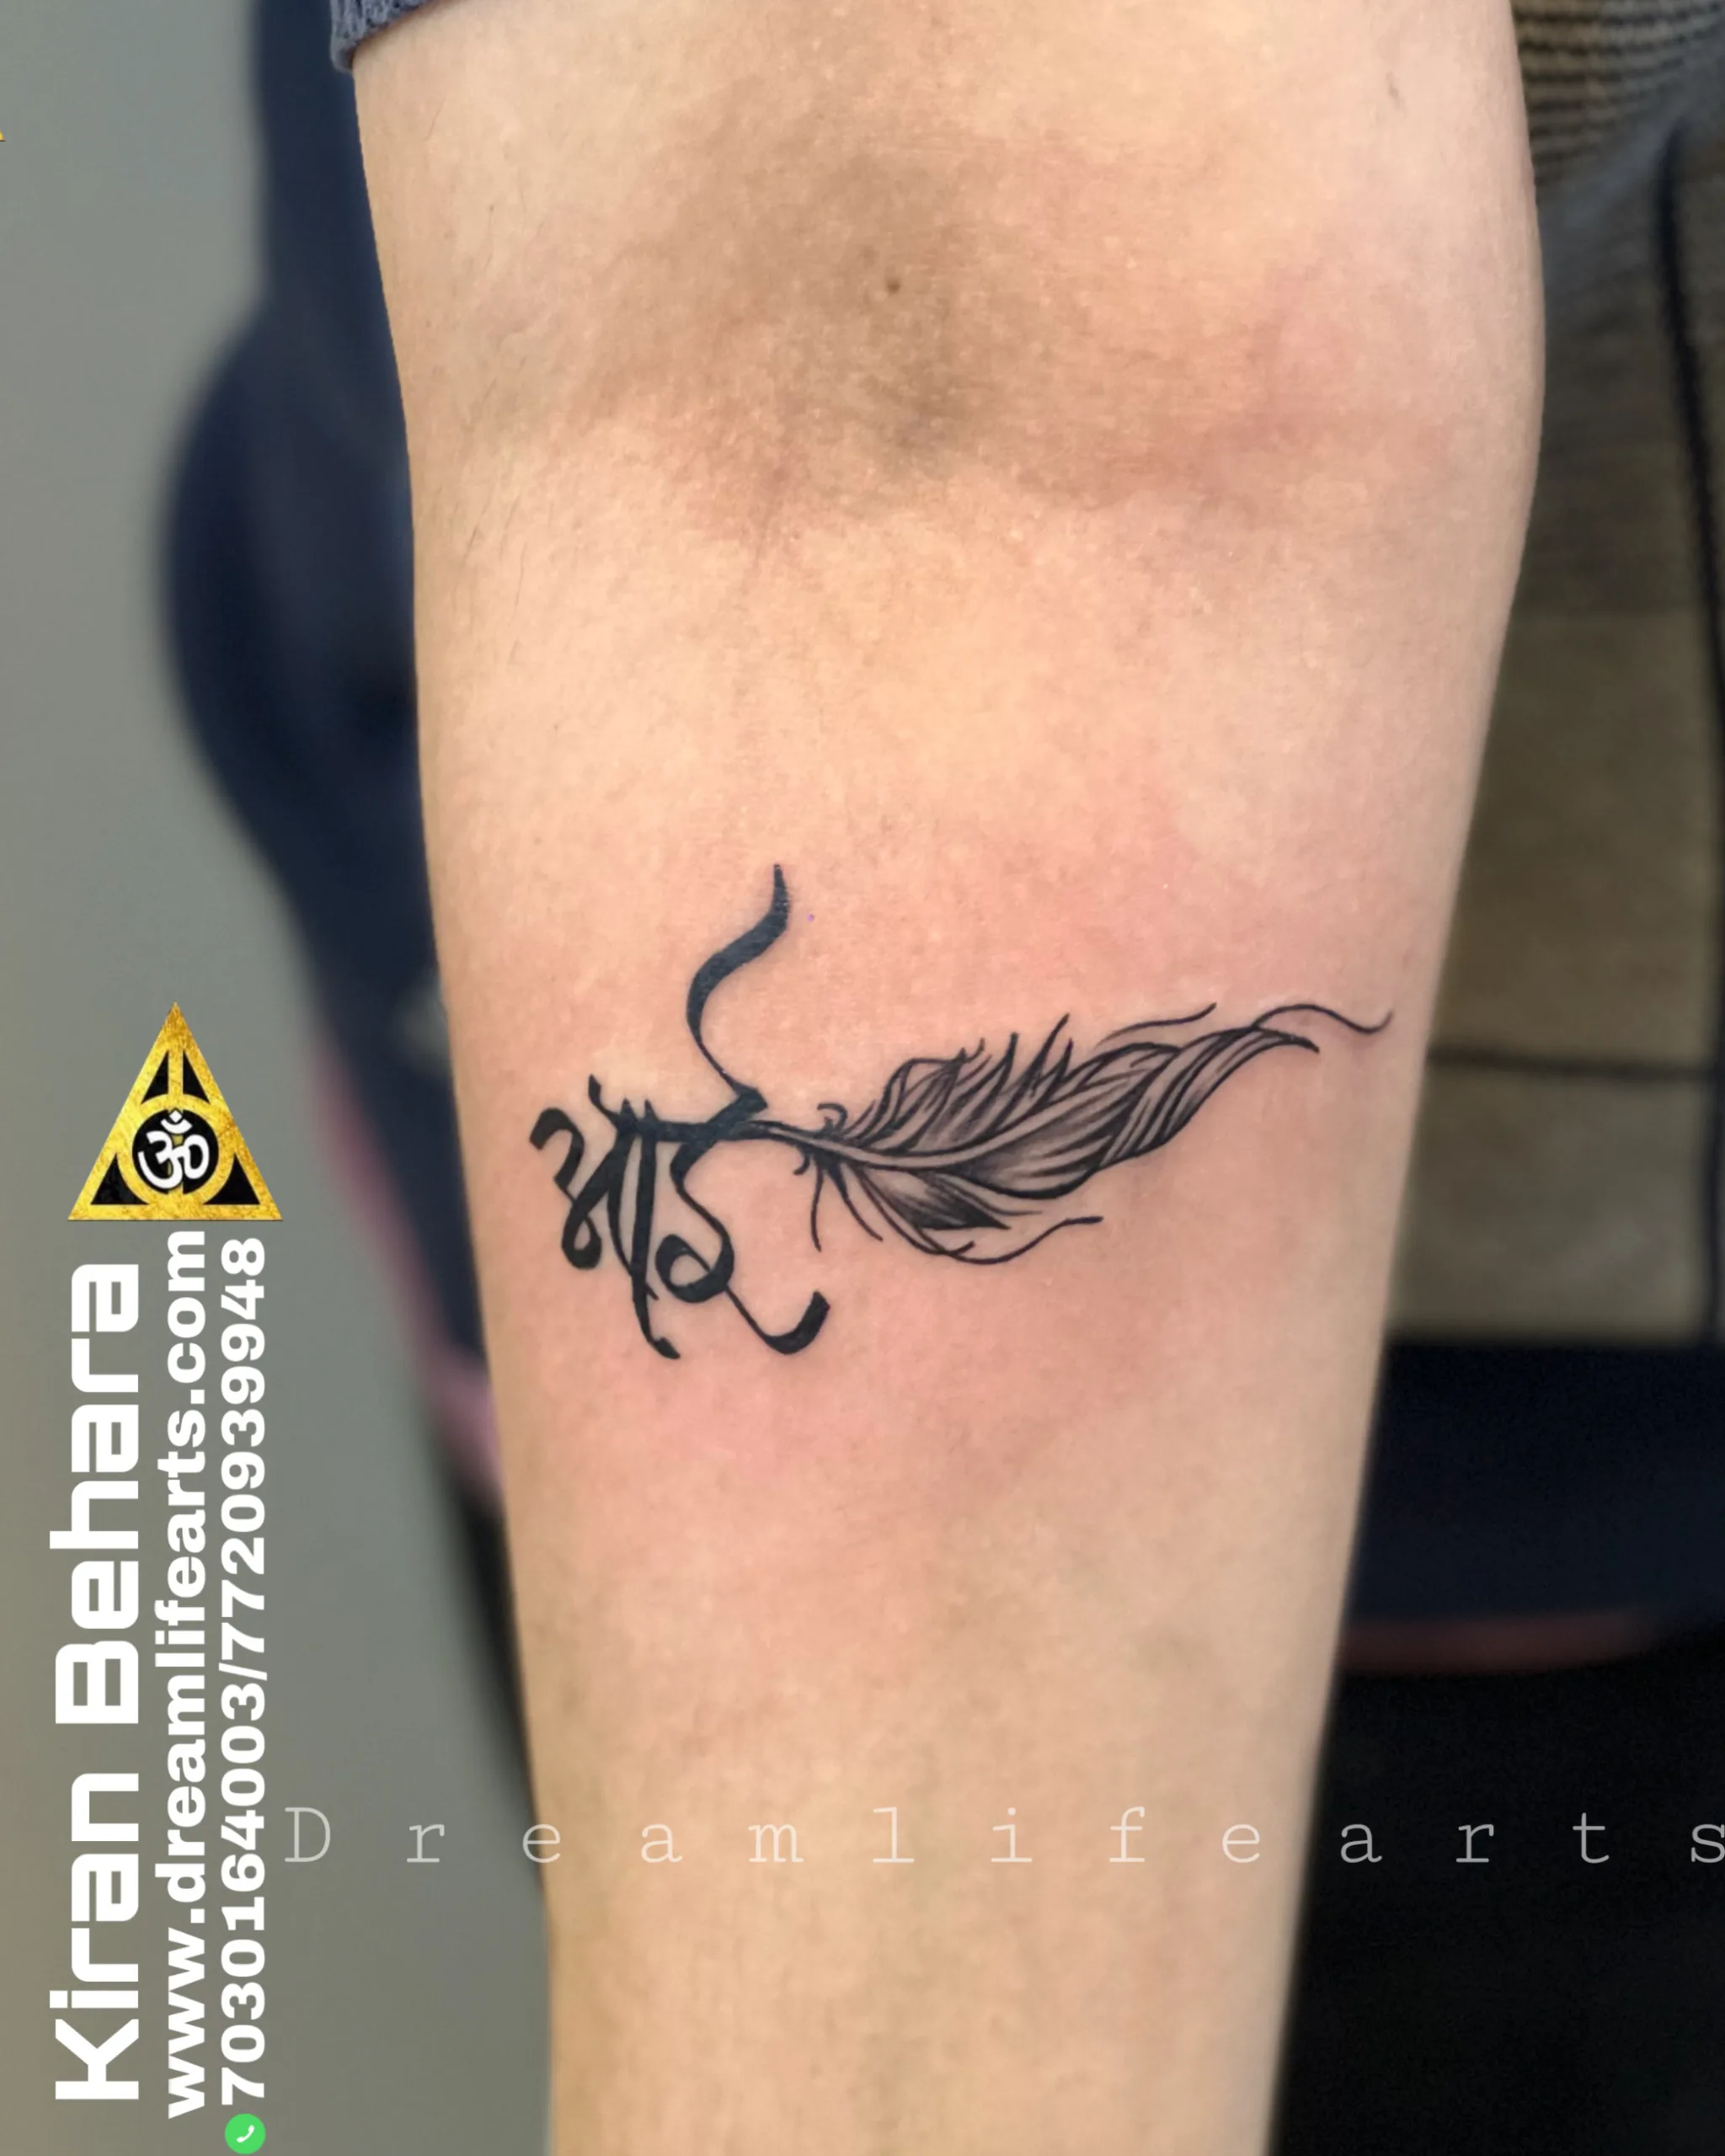 Get script tattoo in Calgary | Viktoriia Ink